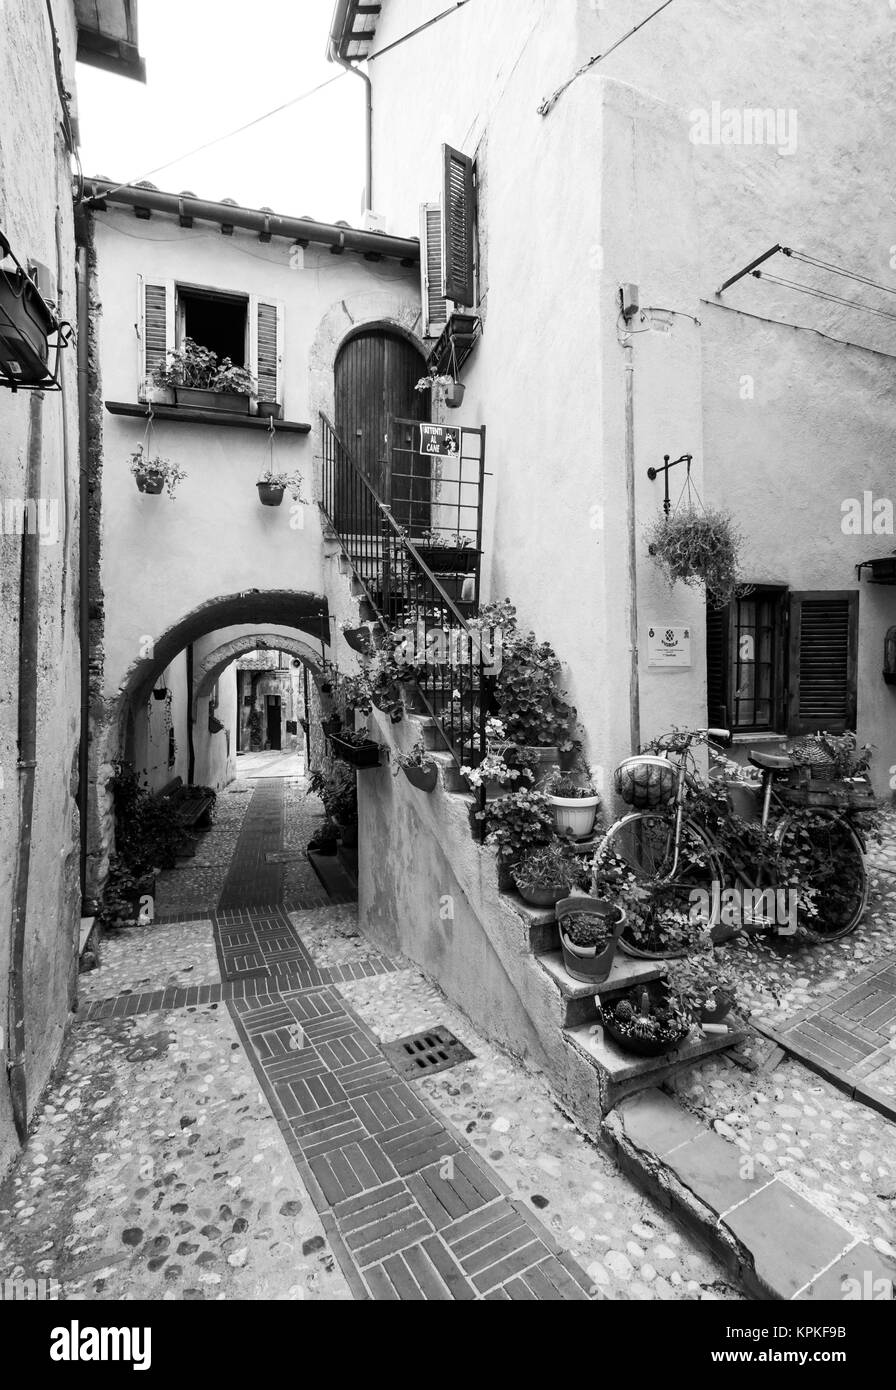 Castelnuovo di Farfa, Italien - Eine kleine mittelalterliche Stadt in der Provinz Viterbo, Region Latium in Italien mit der schönen historischen Zentrum in Stein Stockfoto